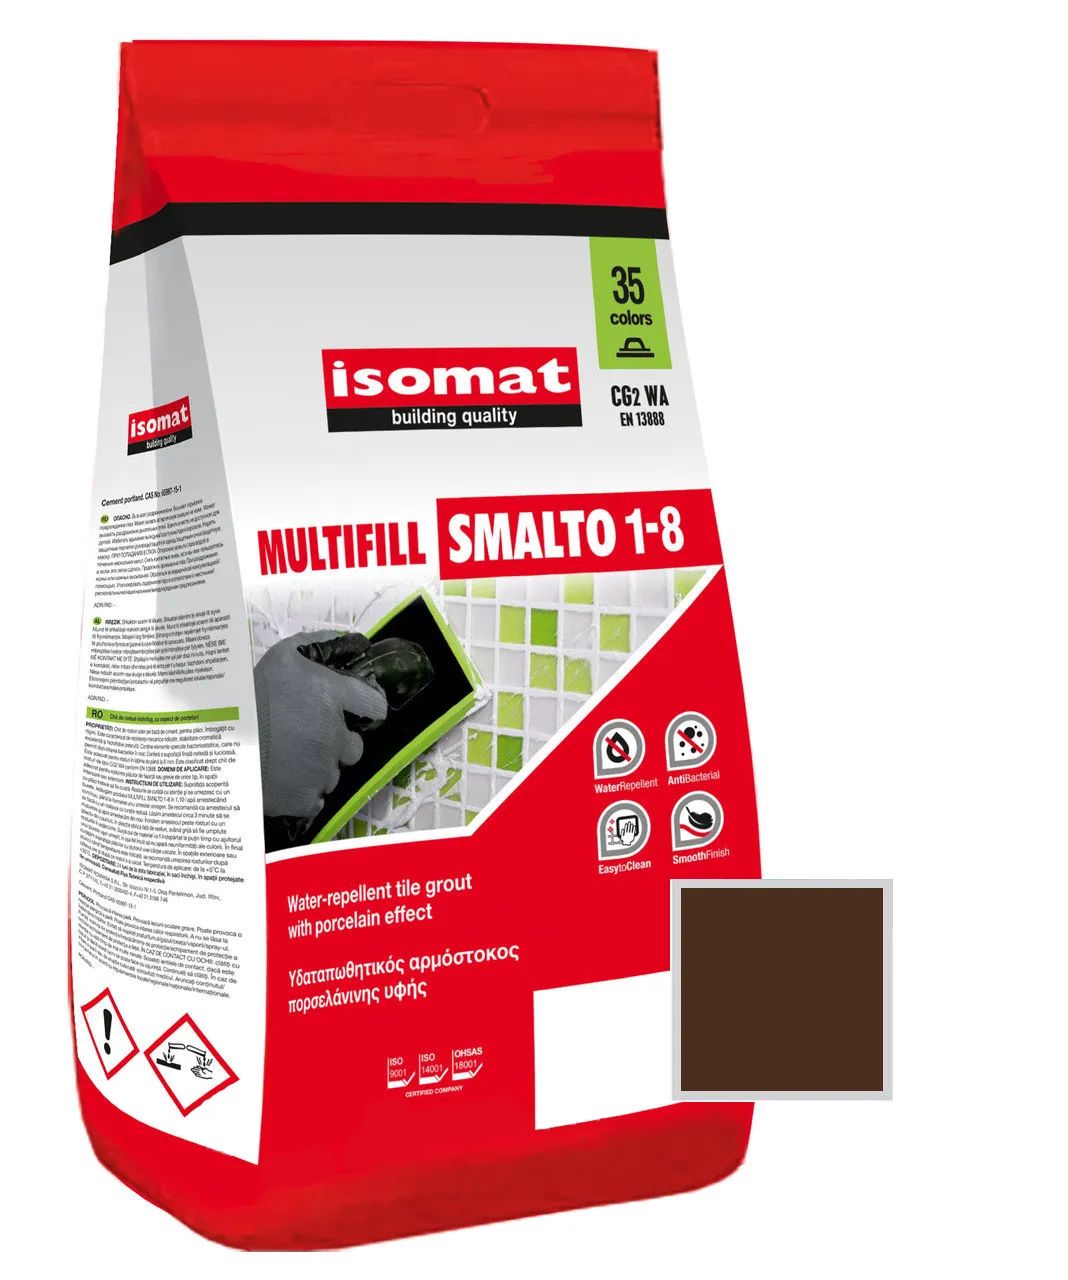 Затирка полимерцементная ISOMAT MULTIFILL SMALTO 1-8 № 08 Коричневый 2кг 51150802 сумка мешок на молнии коричневый